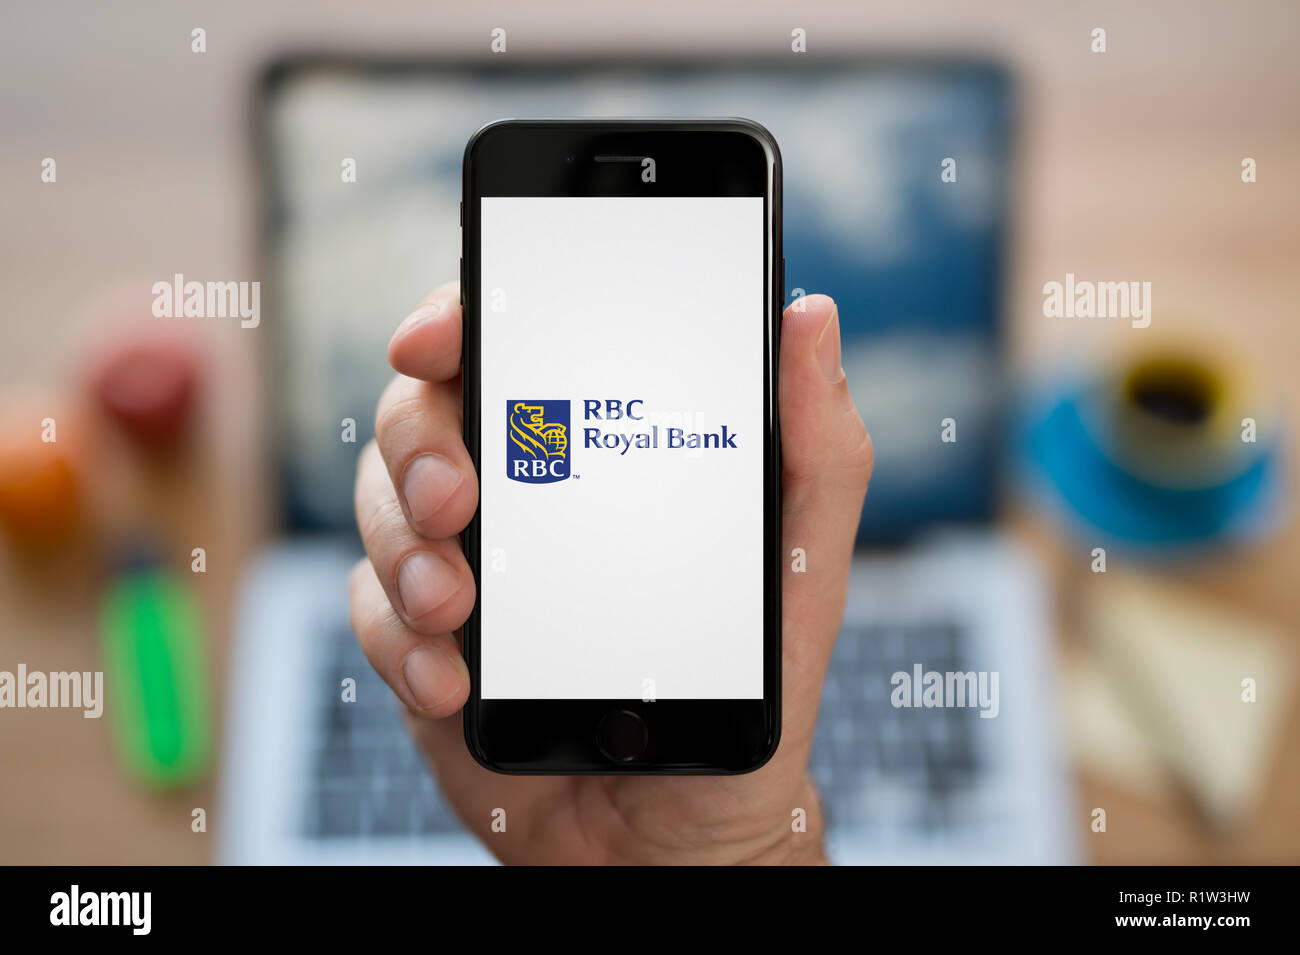 Un uomo guarda al suo iPhone che consente di visualizzare l'RBC Royal Bank logo, mentre se ne sta seduto alla sua scrivania per computer (solo uso editoriale). Foto Stock